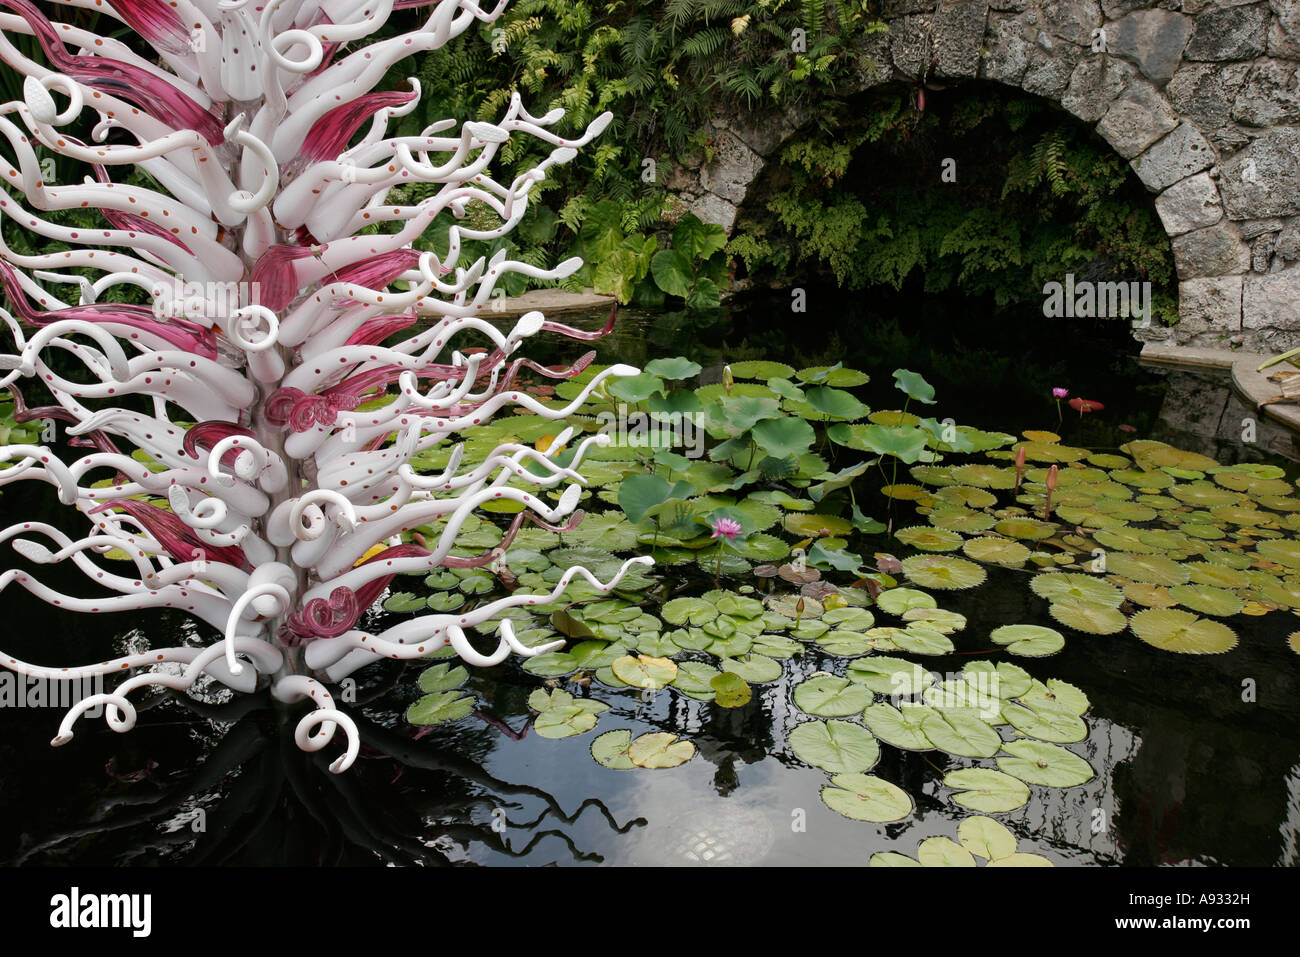 Miami Florida,Coral Gables,Fairchild Tropical Botanic Garden,botanique,Chihuly sculpture d'art de verre, étang,tapis de nénuphars,FL070527032 Banque D'Images